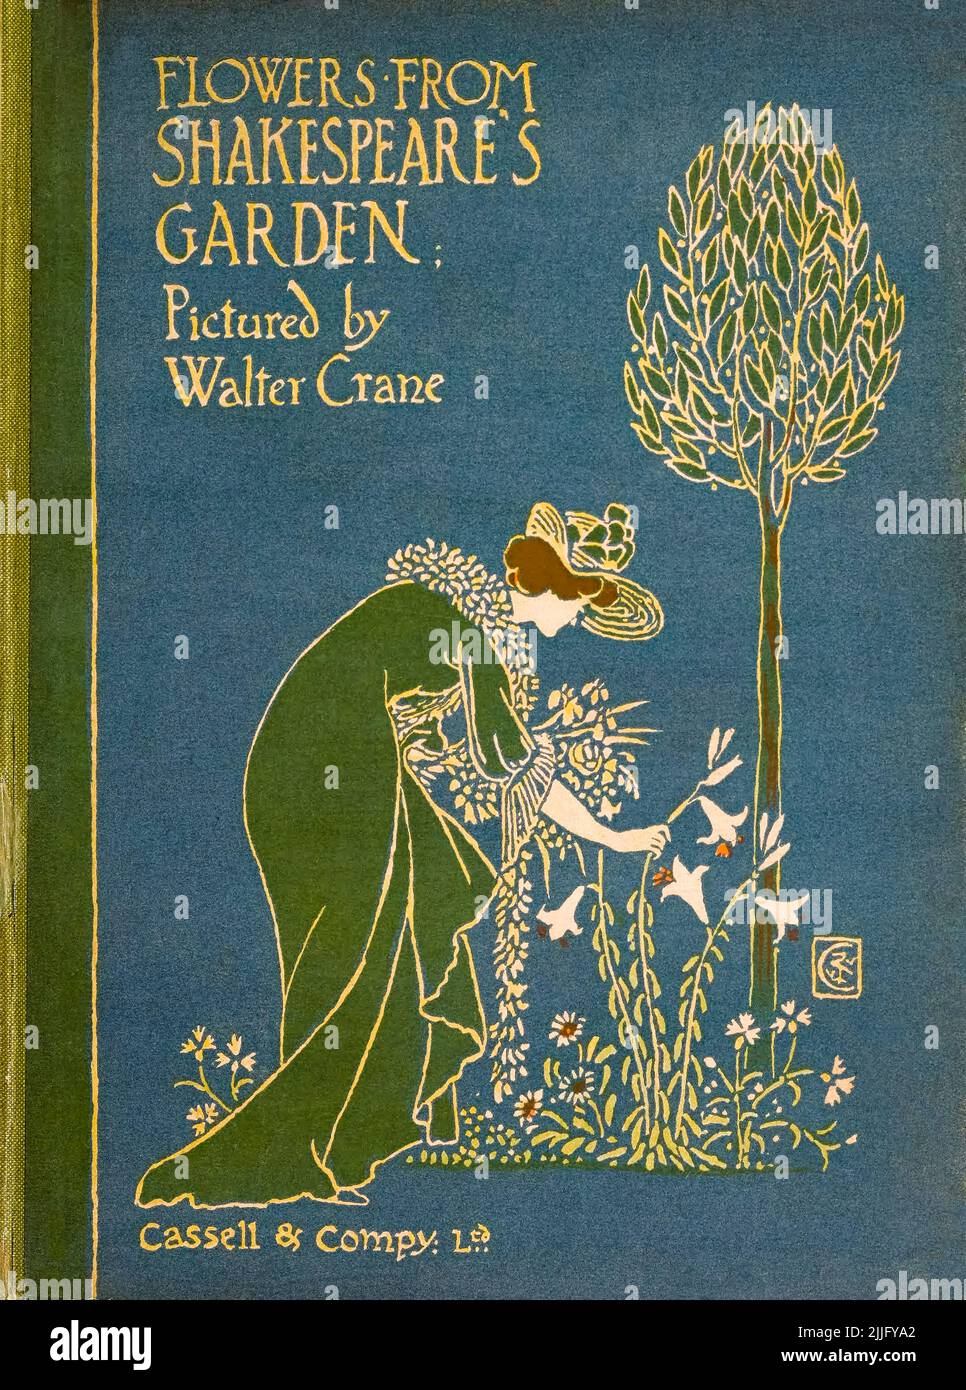 Fleurs du jardin de Shakespeare, une postée des pièces de théâtre, illustration de la couverture de livre par Walter Crane, 1909 Banque D'Images